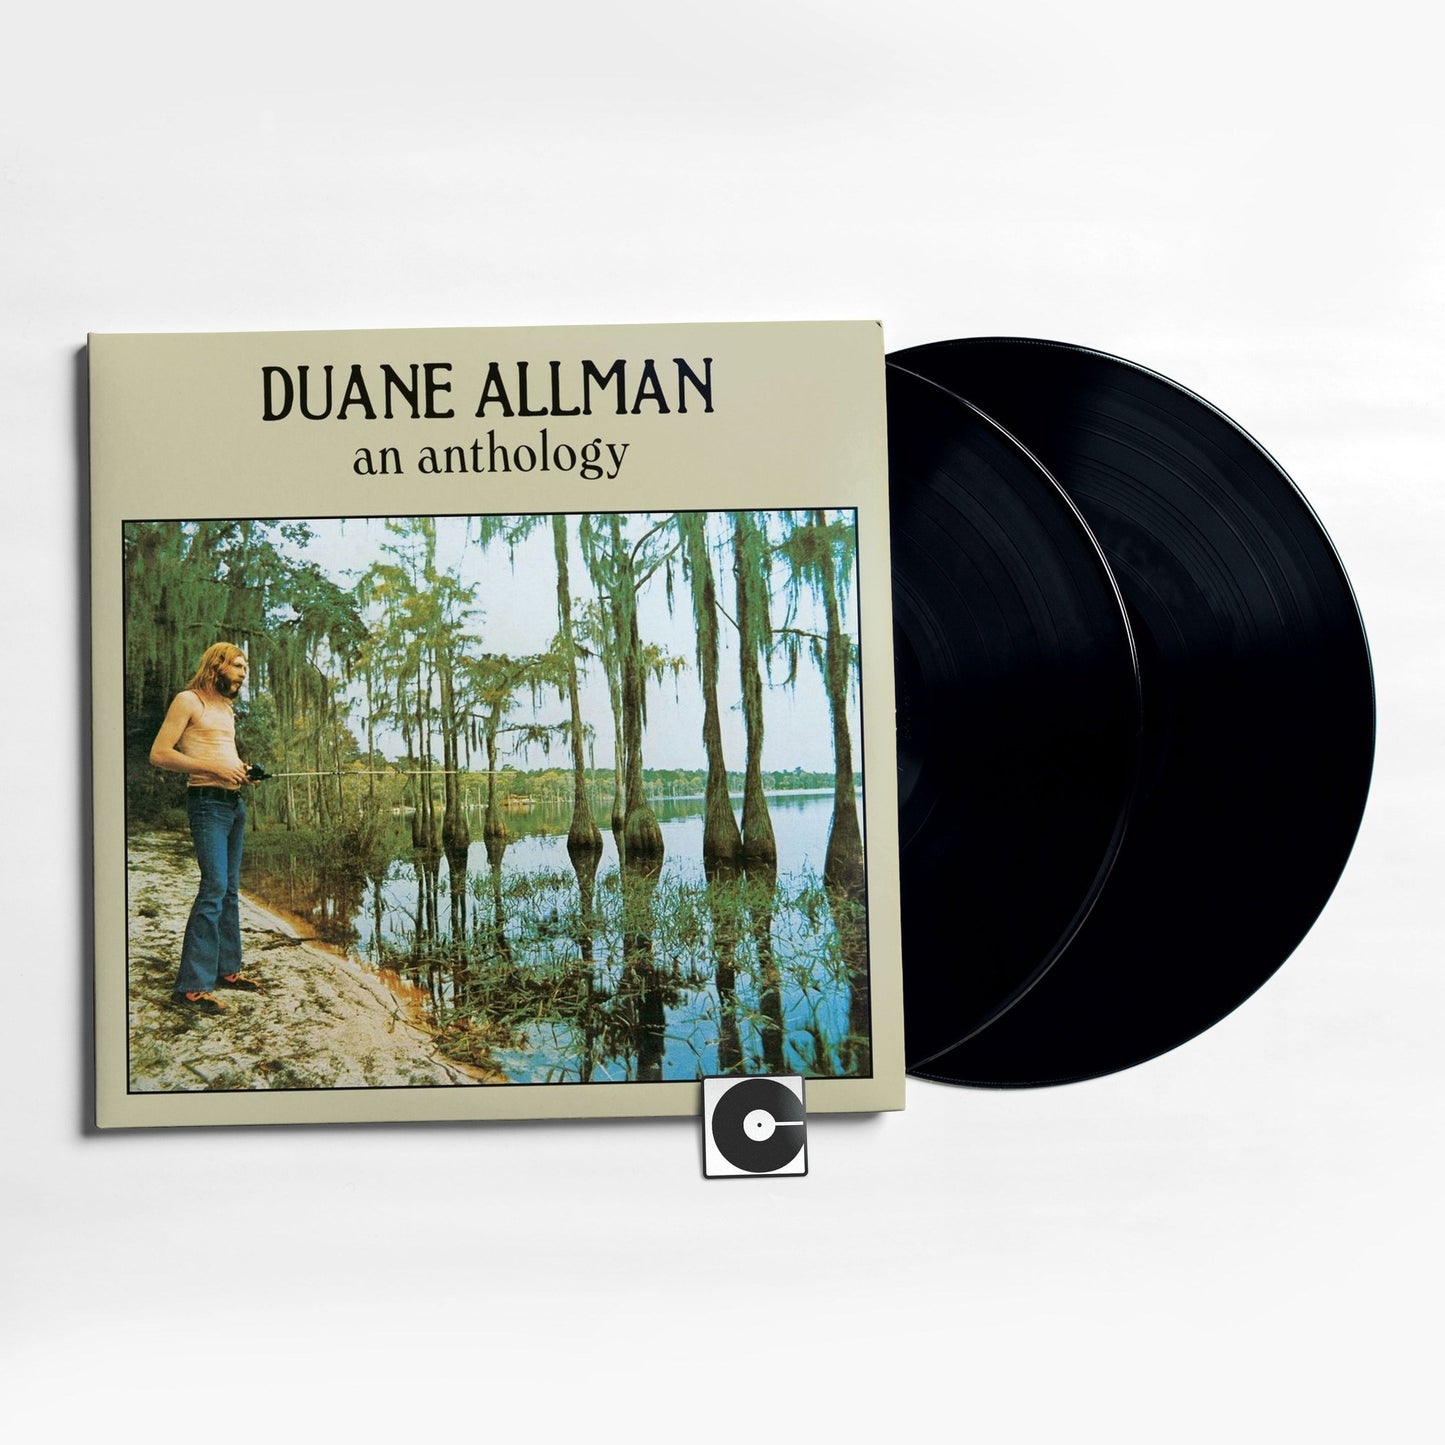 Duane Allman - "An Anthology"